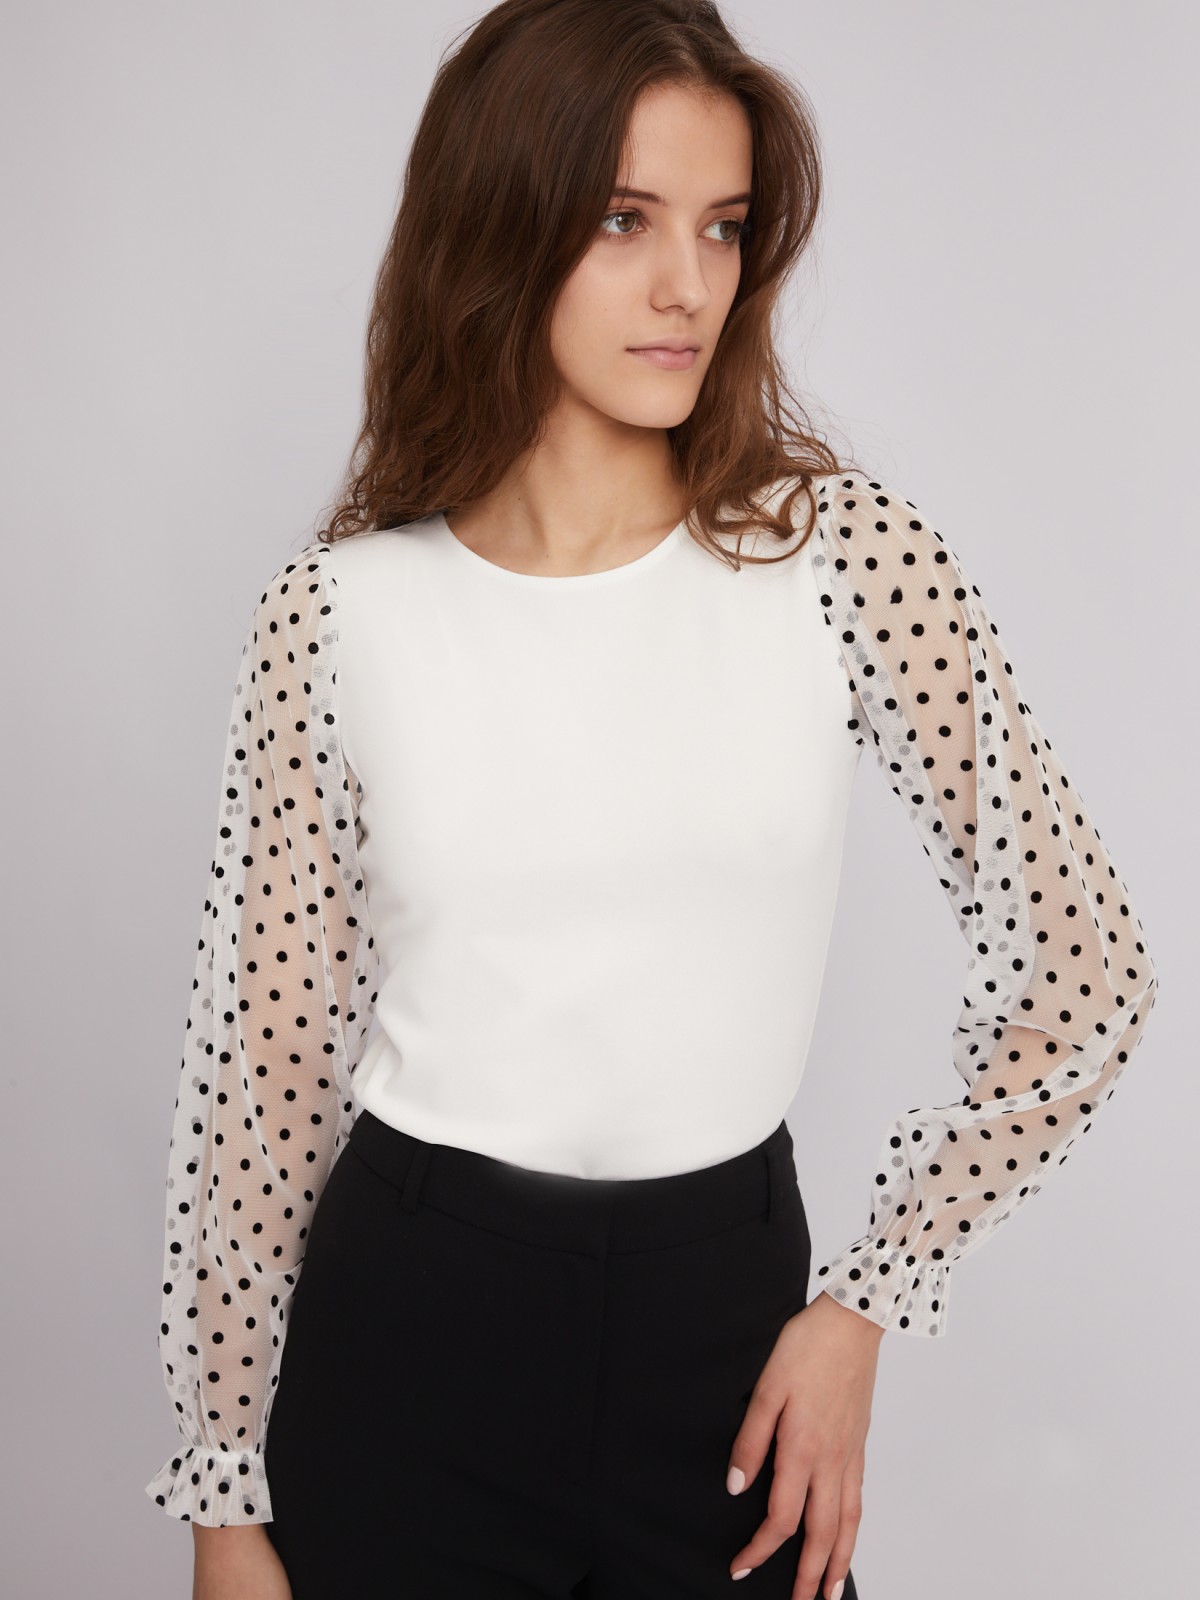 Топ-блузка с акцентными рукавами zolla 023311159203, цвет молоко, размер XS - фото 1